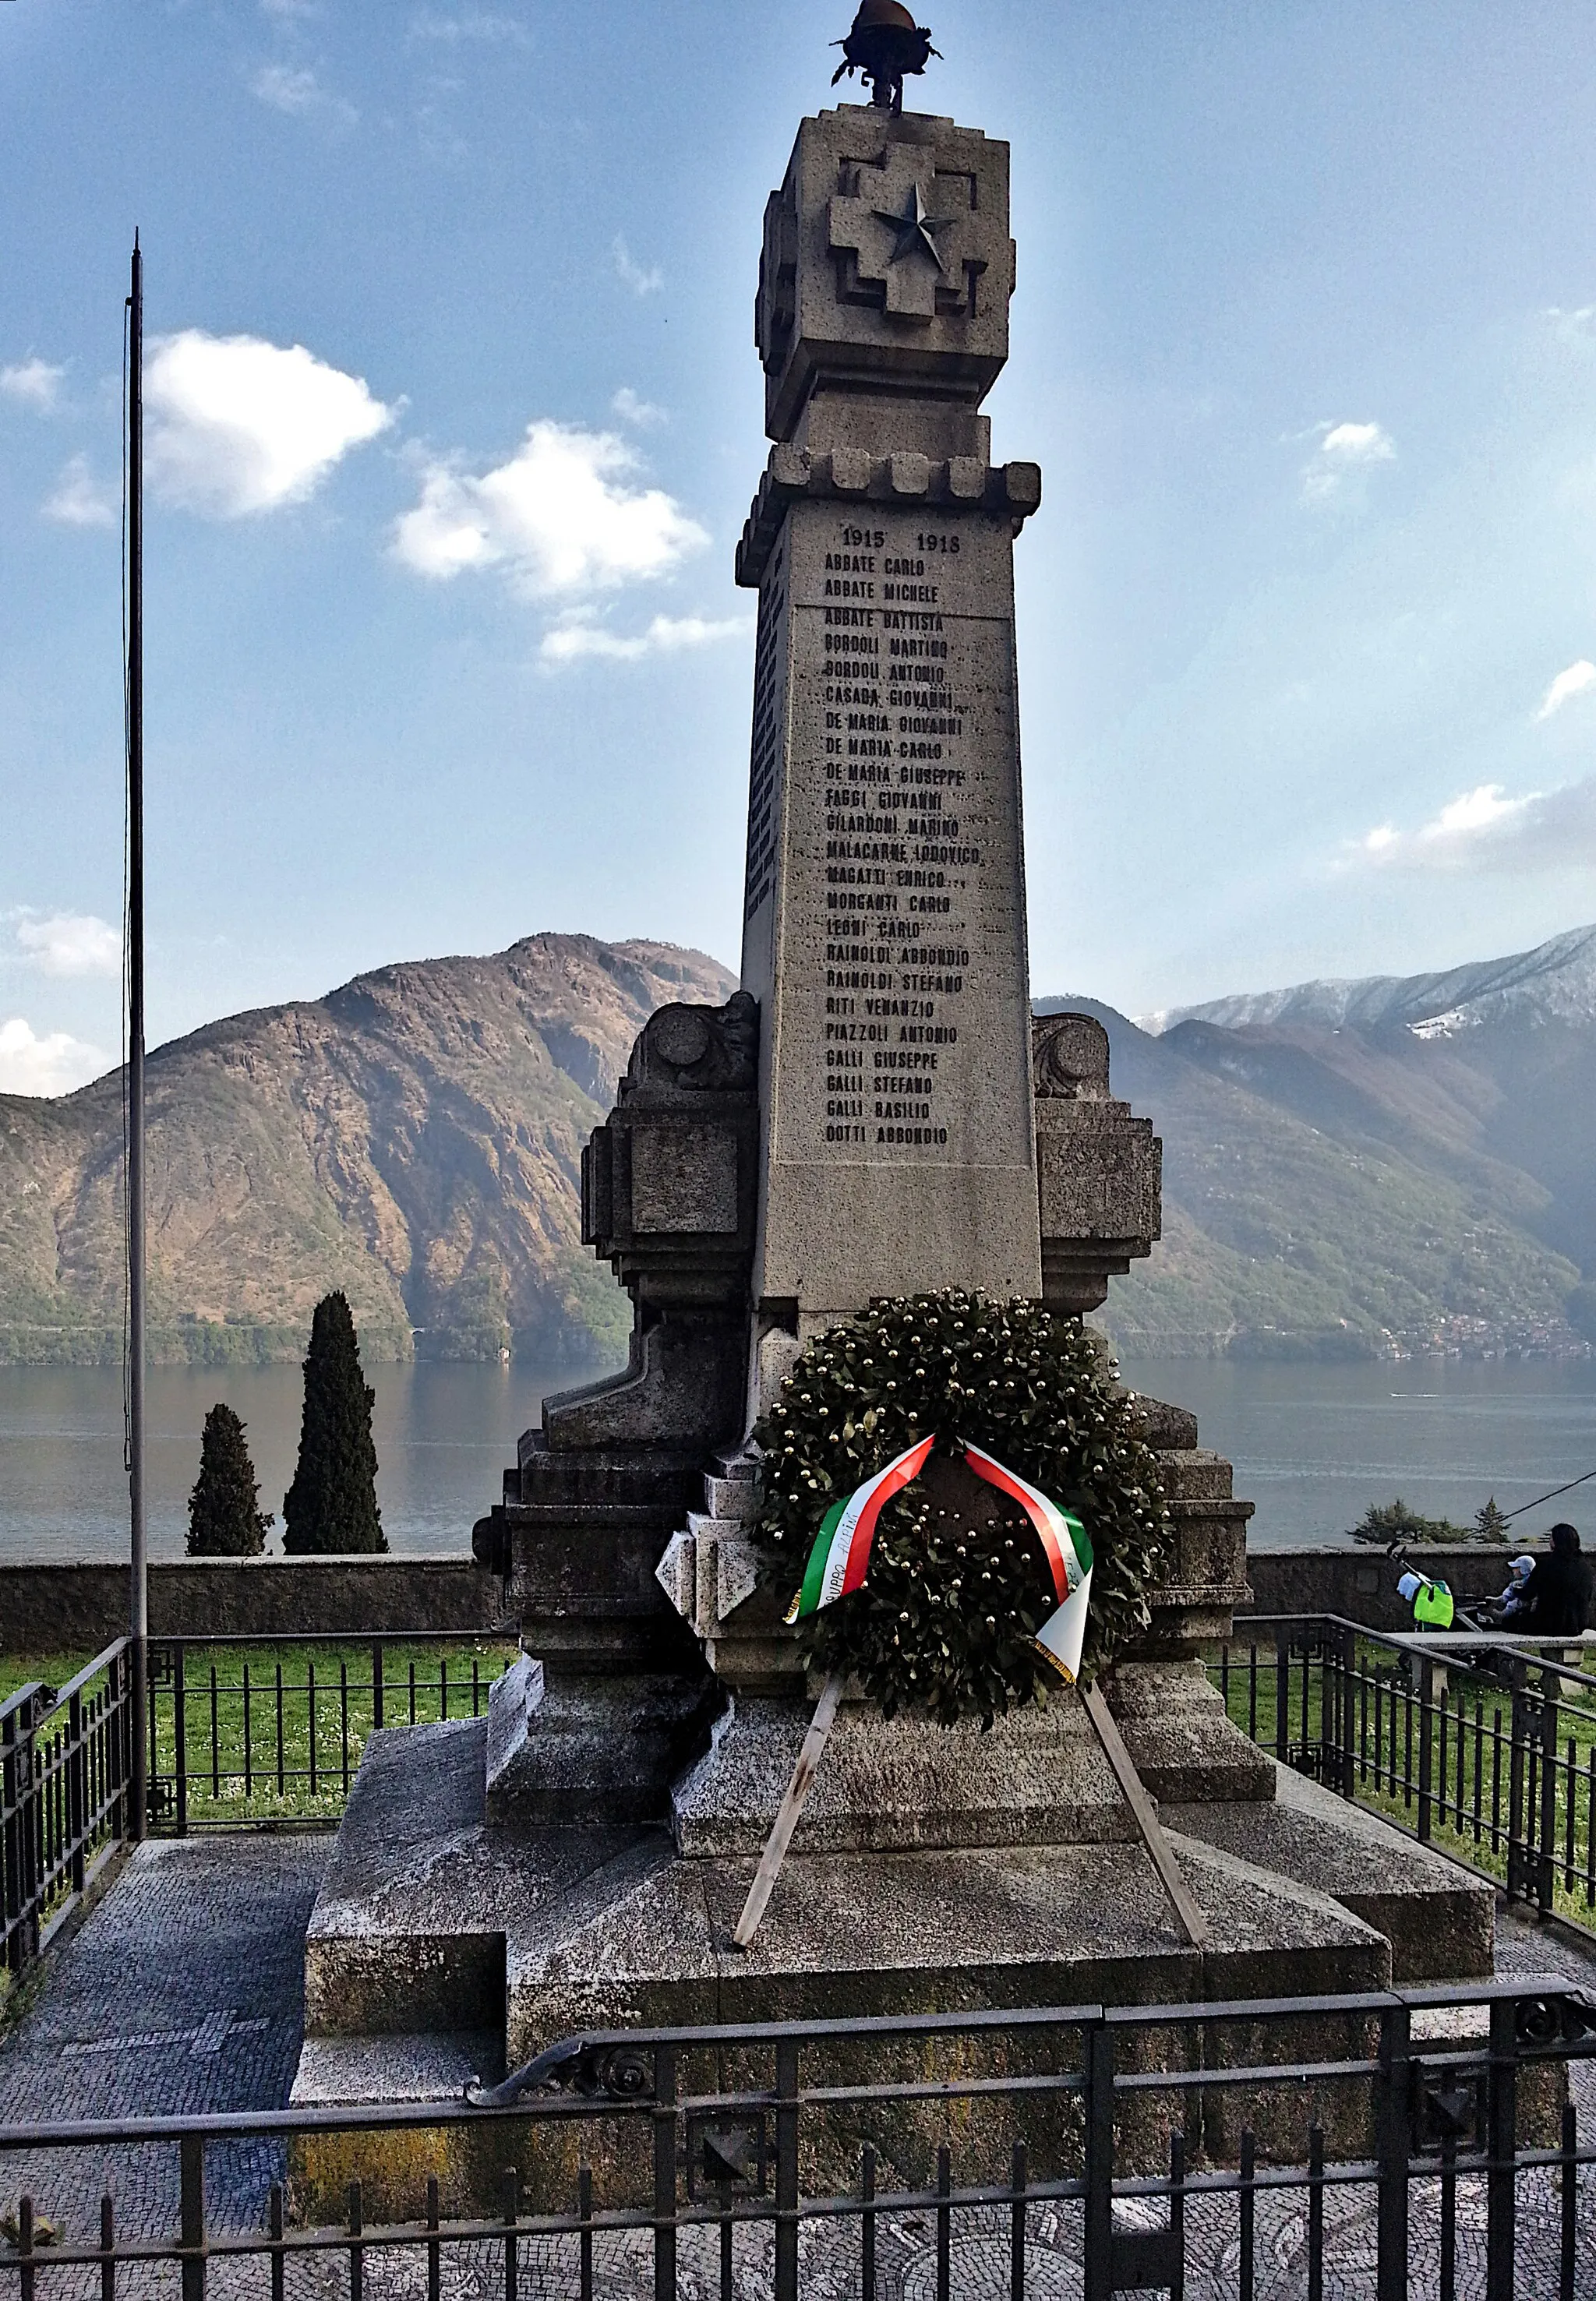 Photo showing: Lato nord-ovest del monumento ai caduti a Mezzegra (Tremezzina), sullo sfondo del Monte Nuvolone.